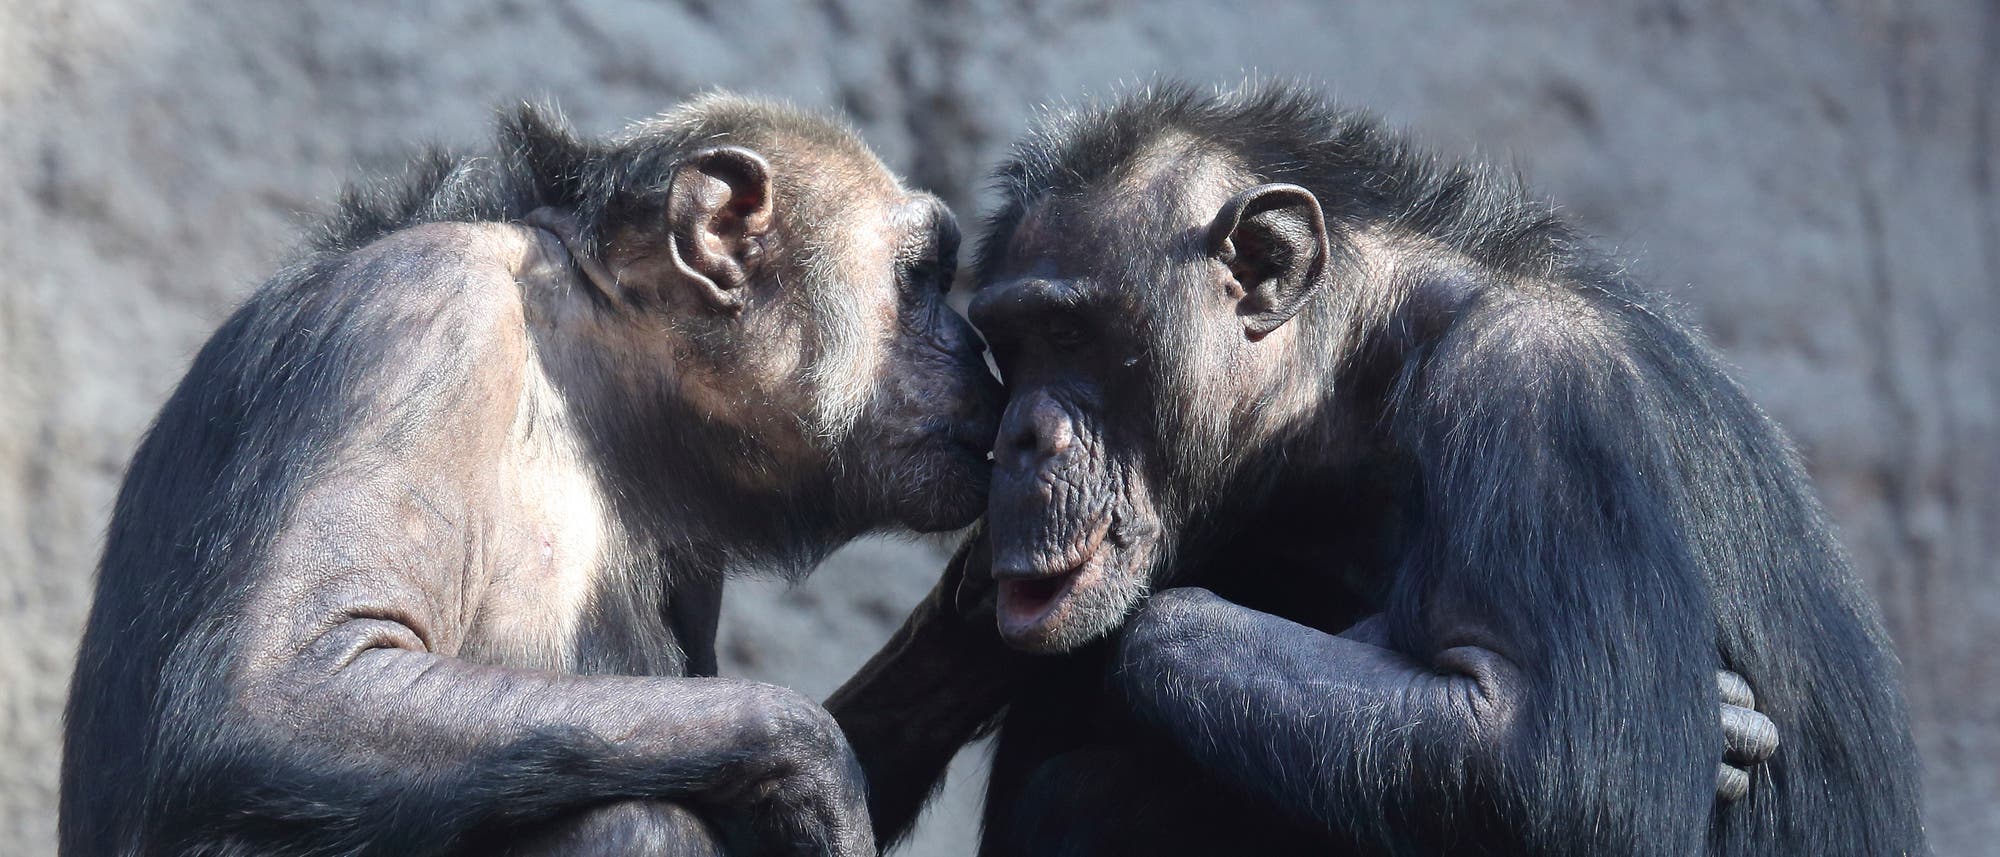 Zwei nah beieinander sitzende Schimpansen; es sieht aus, als würde der linke dem rechten etwas ins Ohr flüstern.